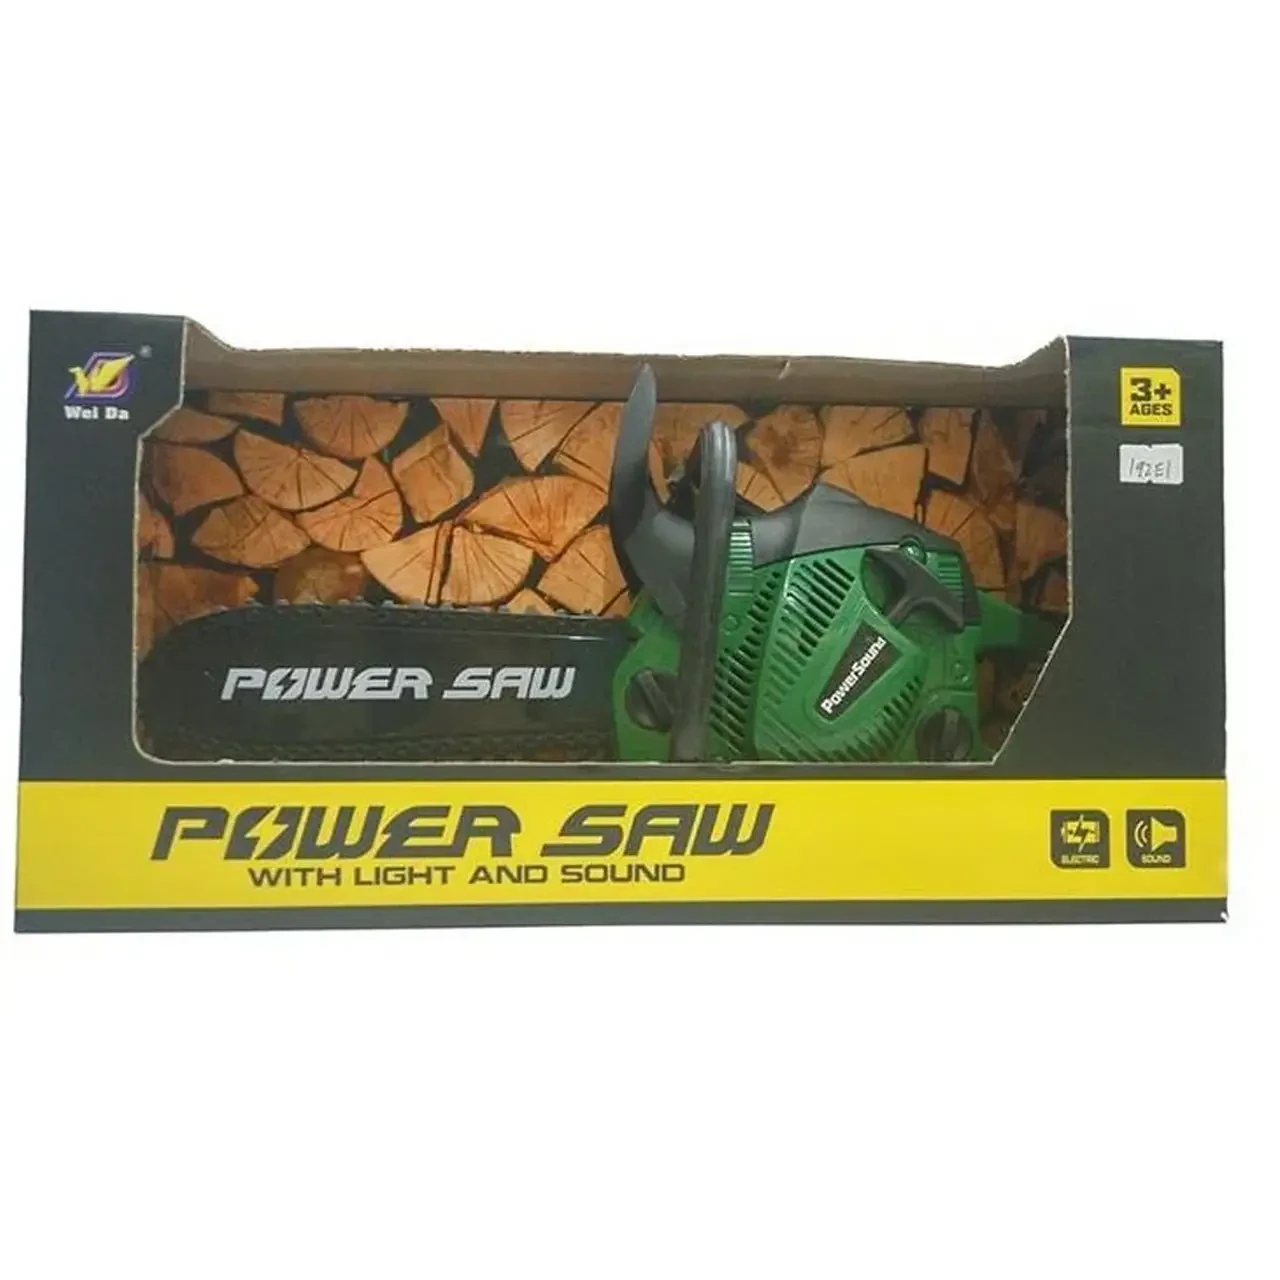 Игрушечная бензопила Power saw, световые/звуковые эффекты 192 B